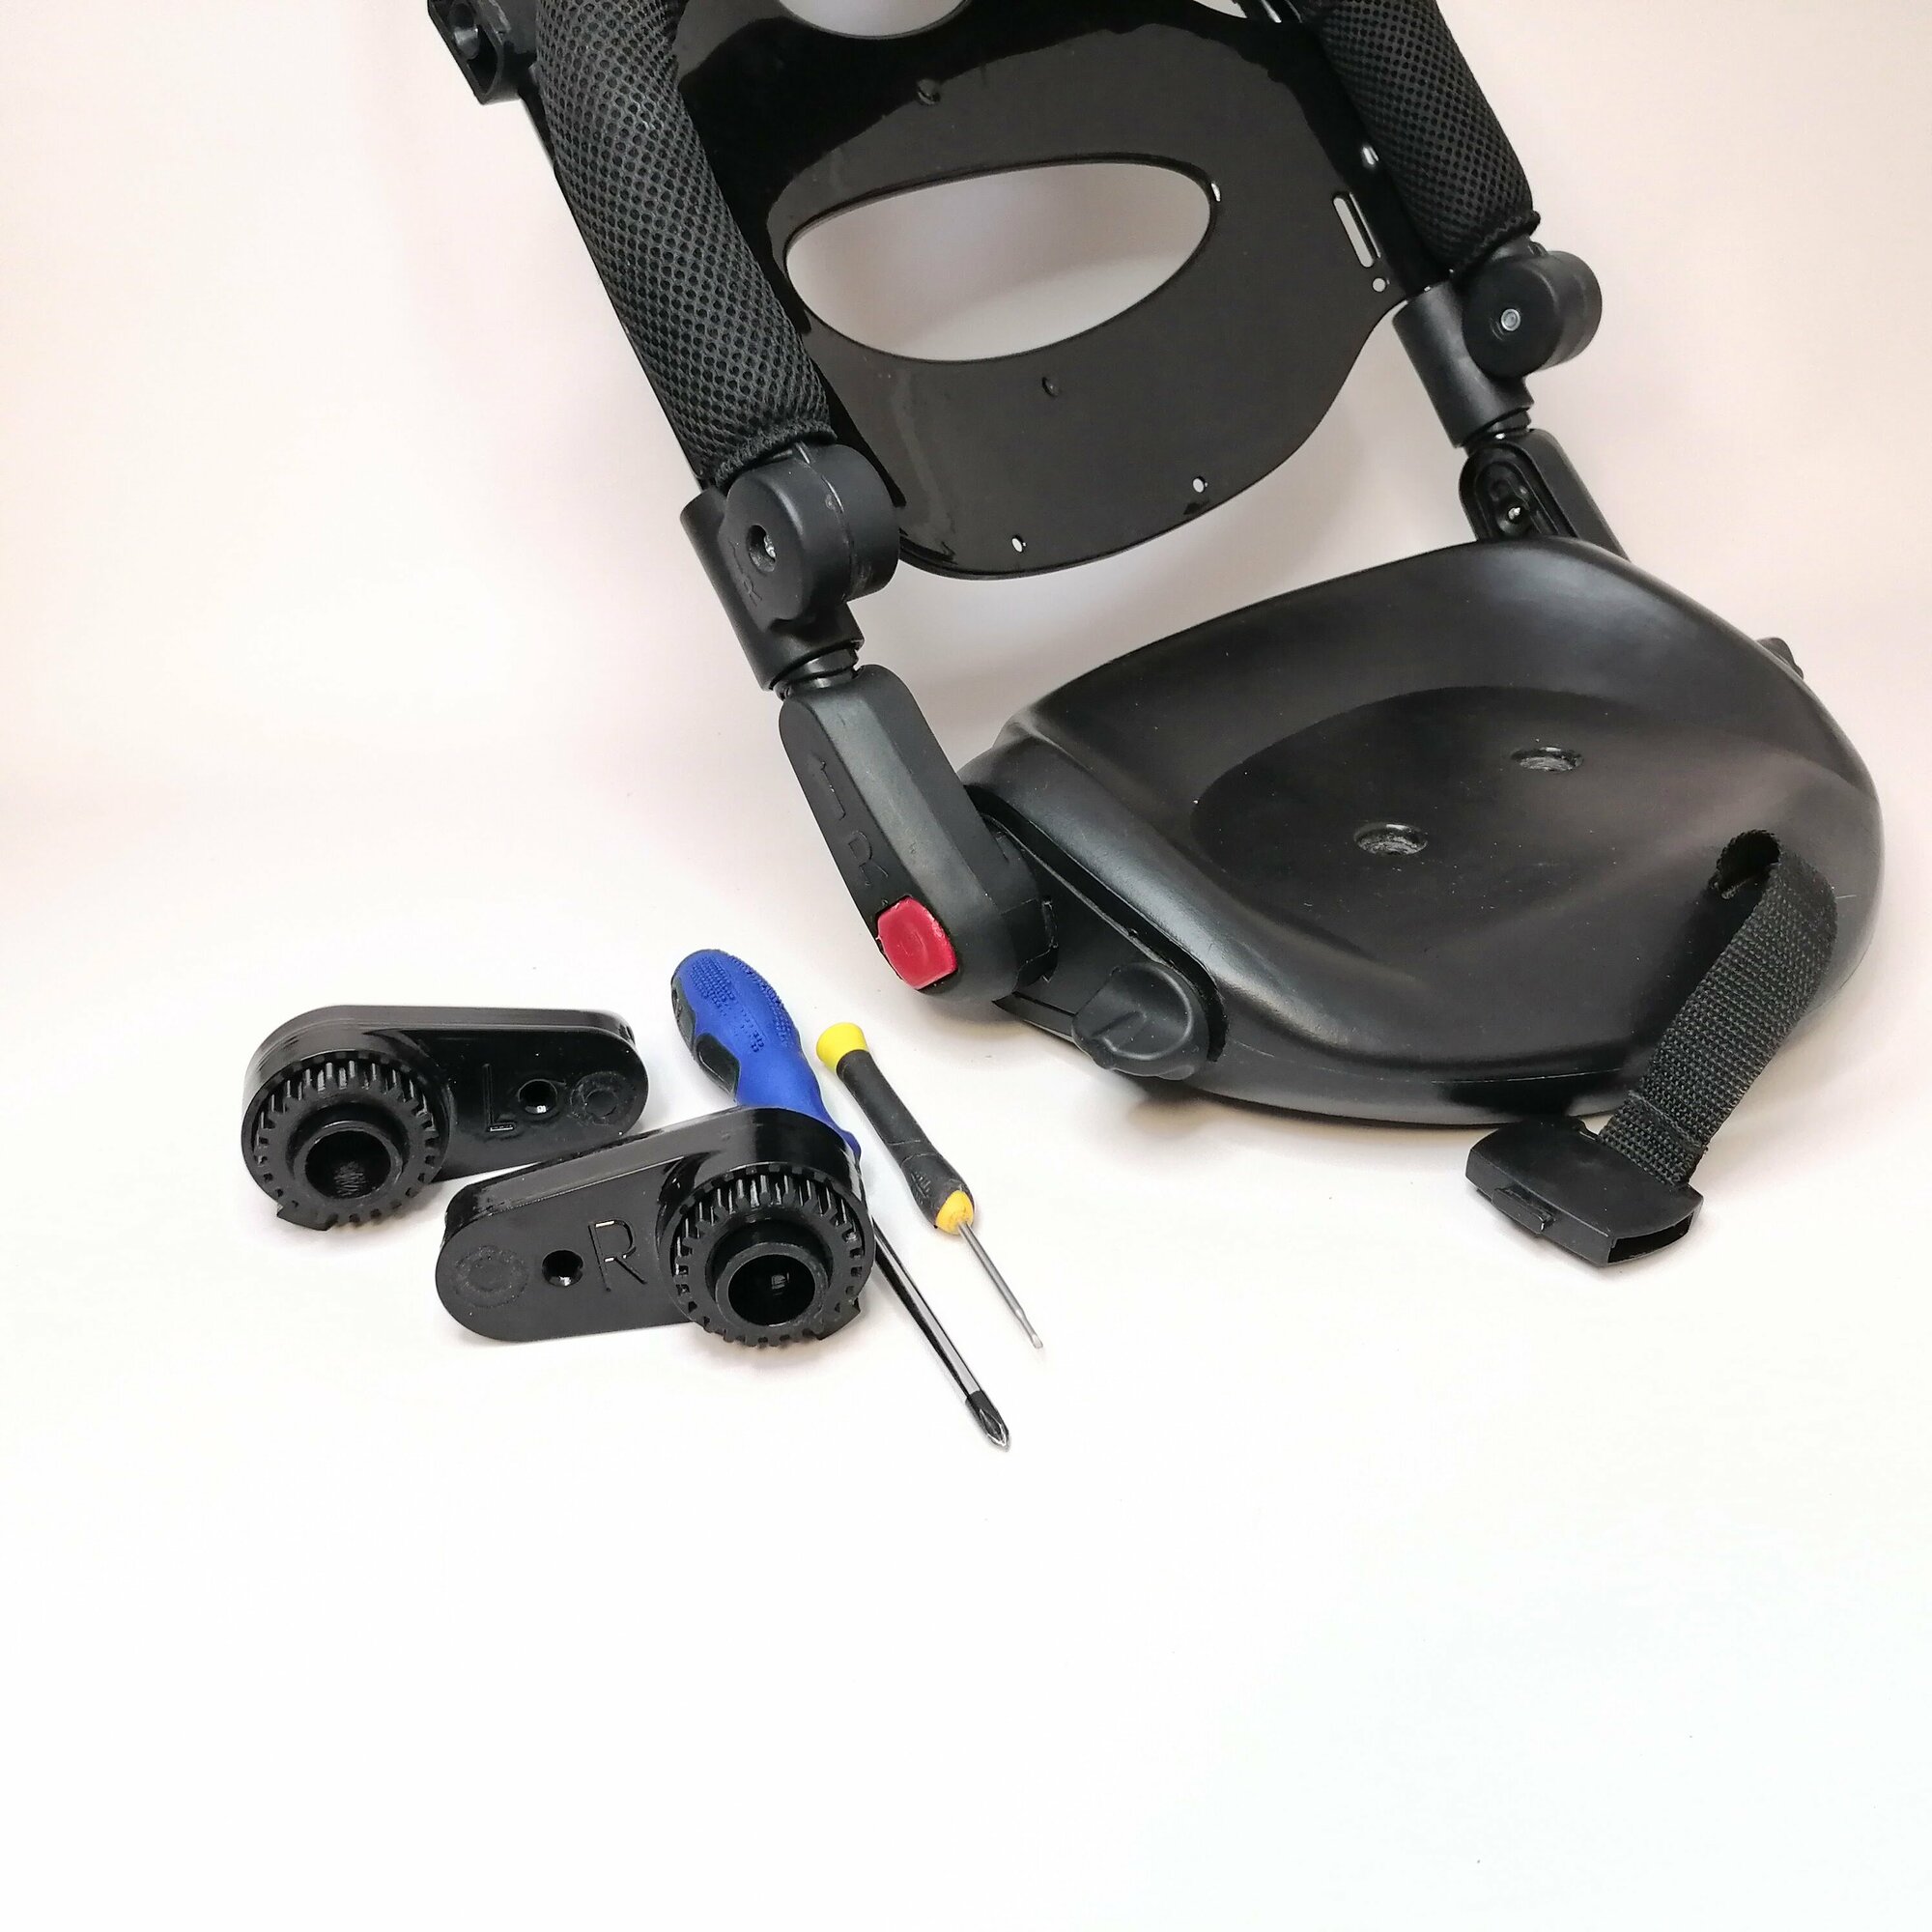 Рычаг и шестерня от механизма наклона сиденья детского велосипеда с поворотным сиденьем, левая сторона